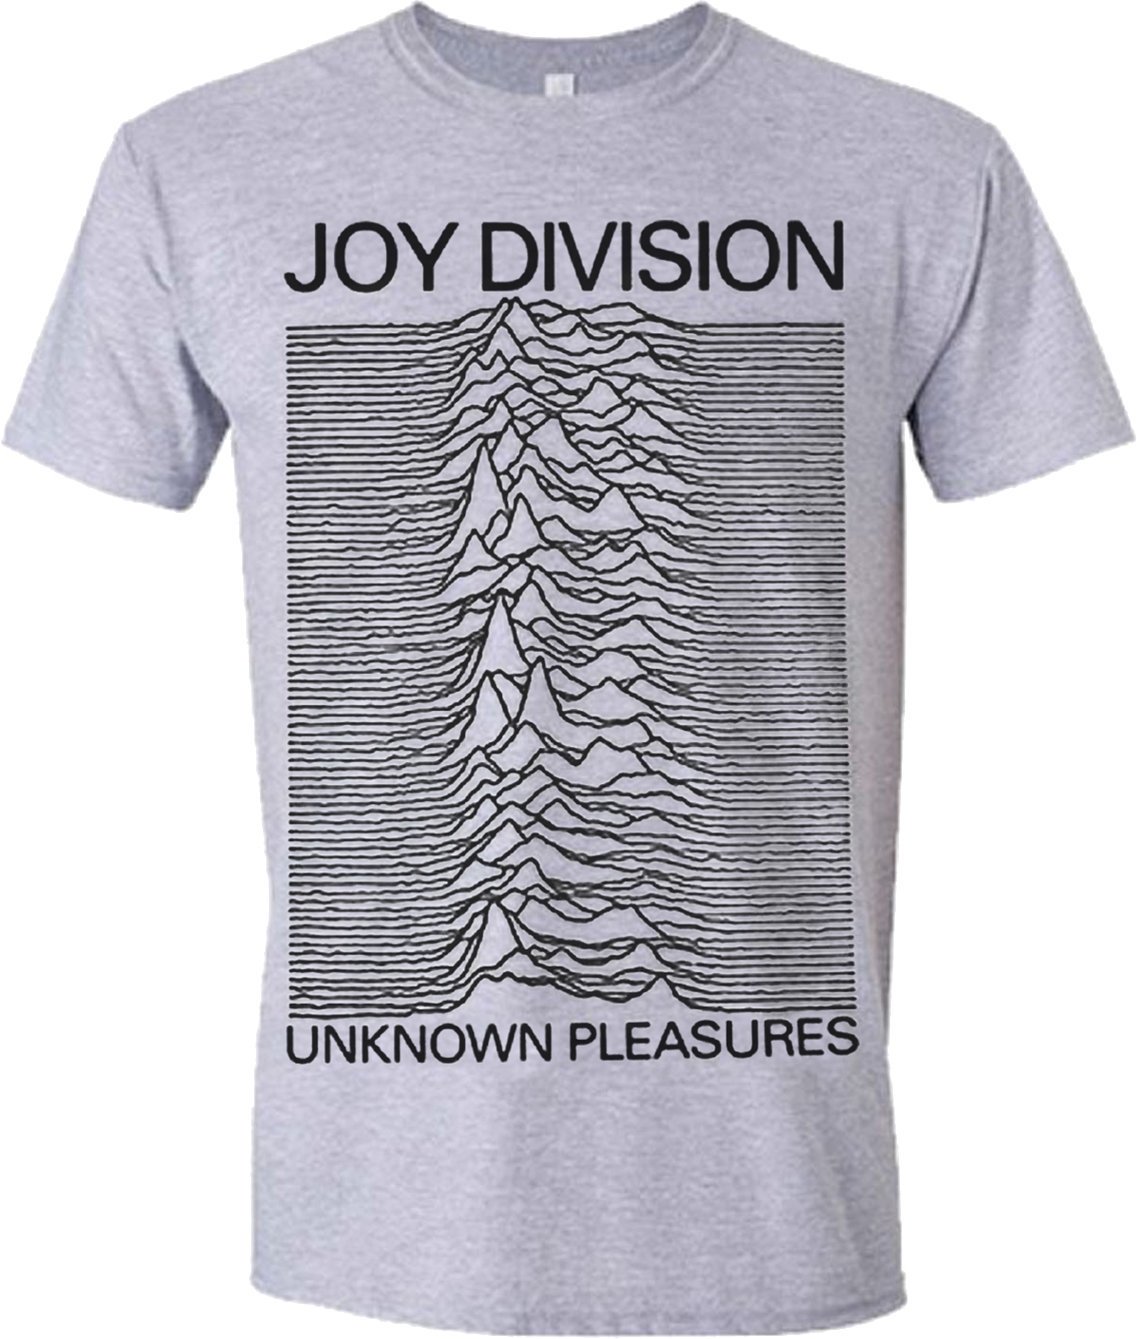 T-shirt Joy Division T-shirt Unknown Pleasures Grey M